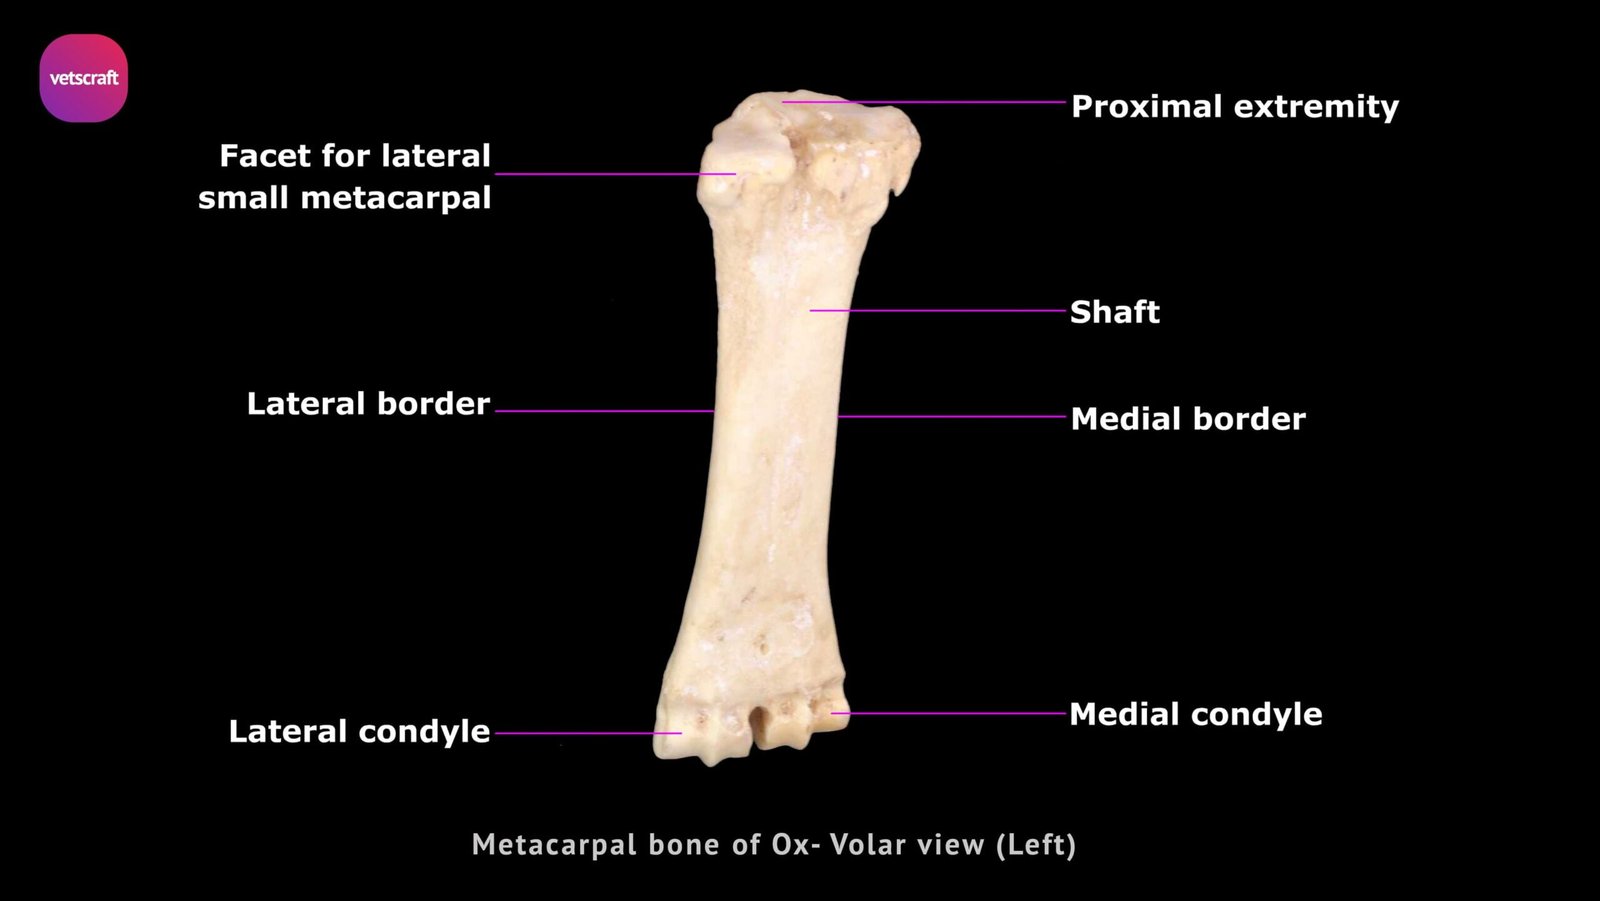 metacarpals anatomy